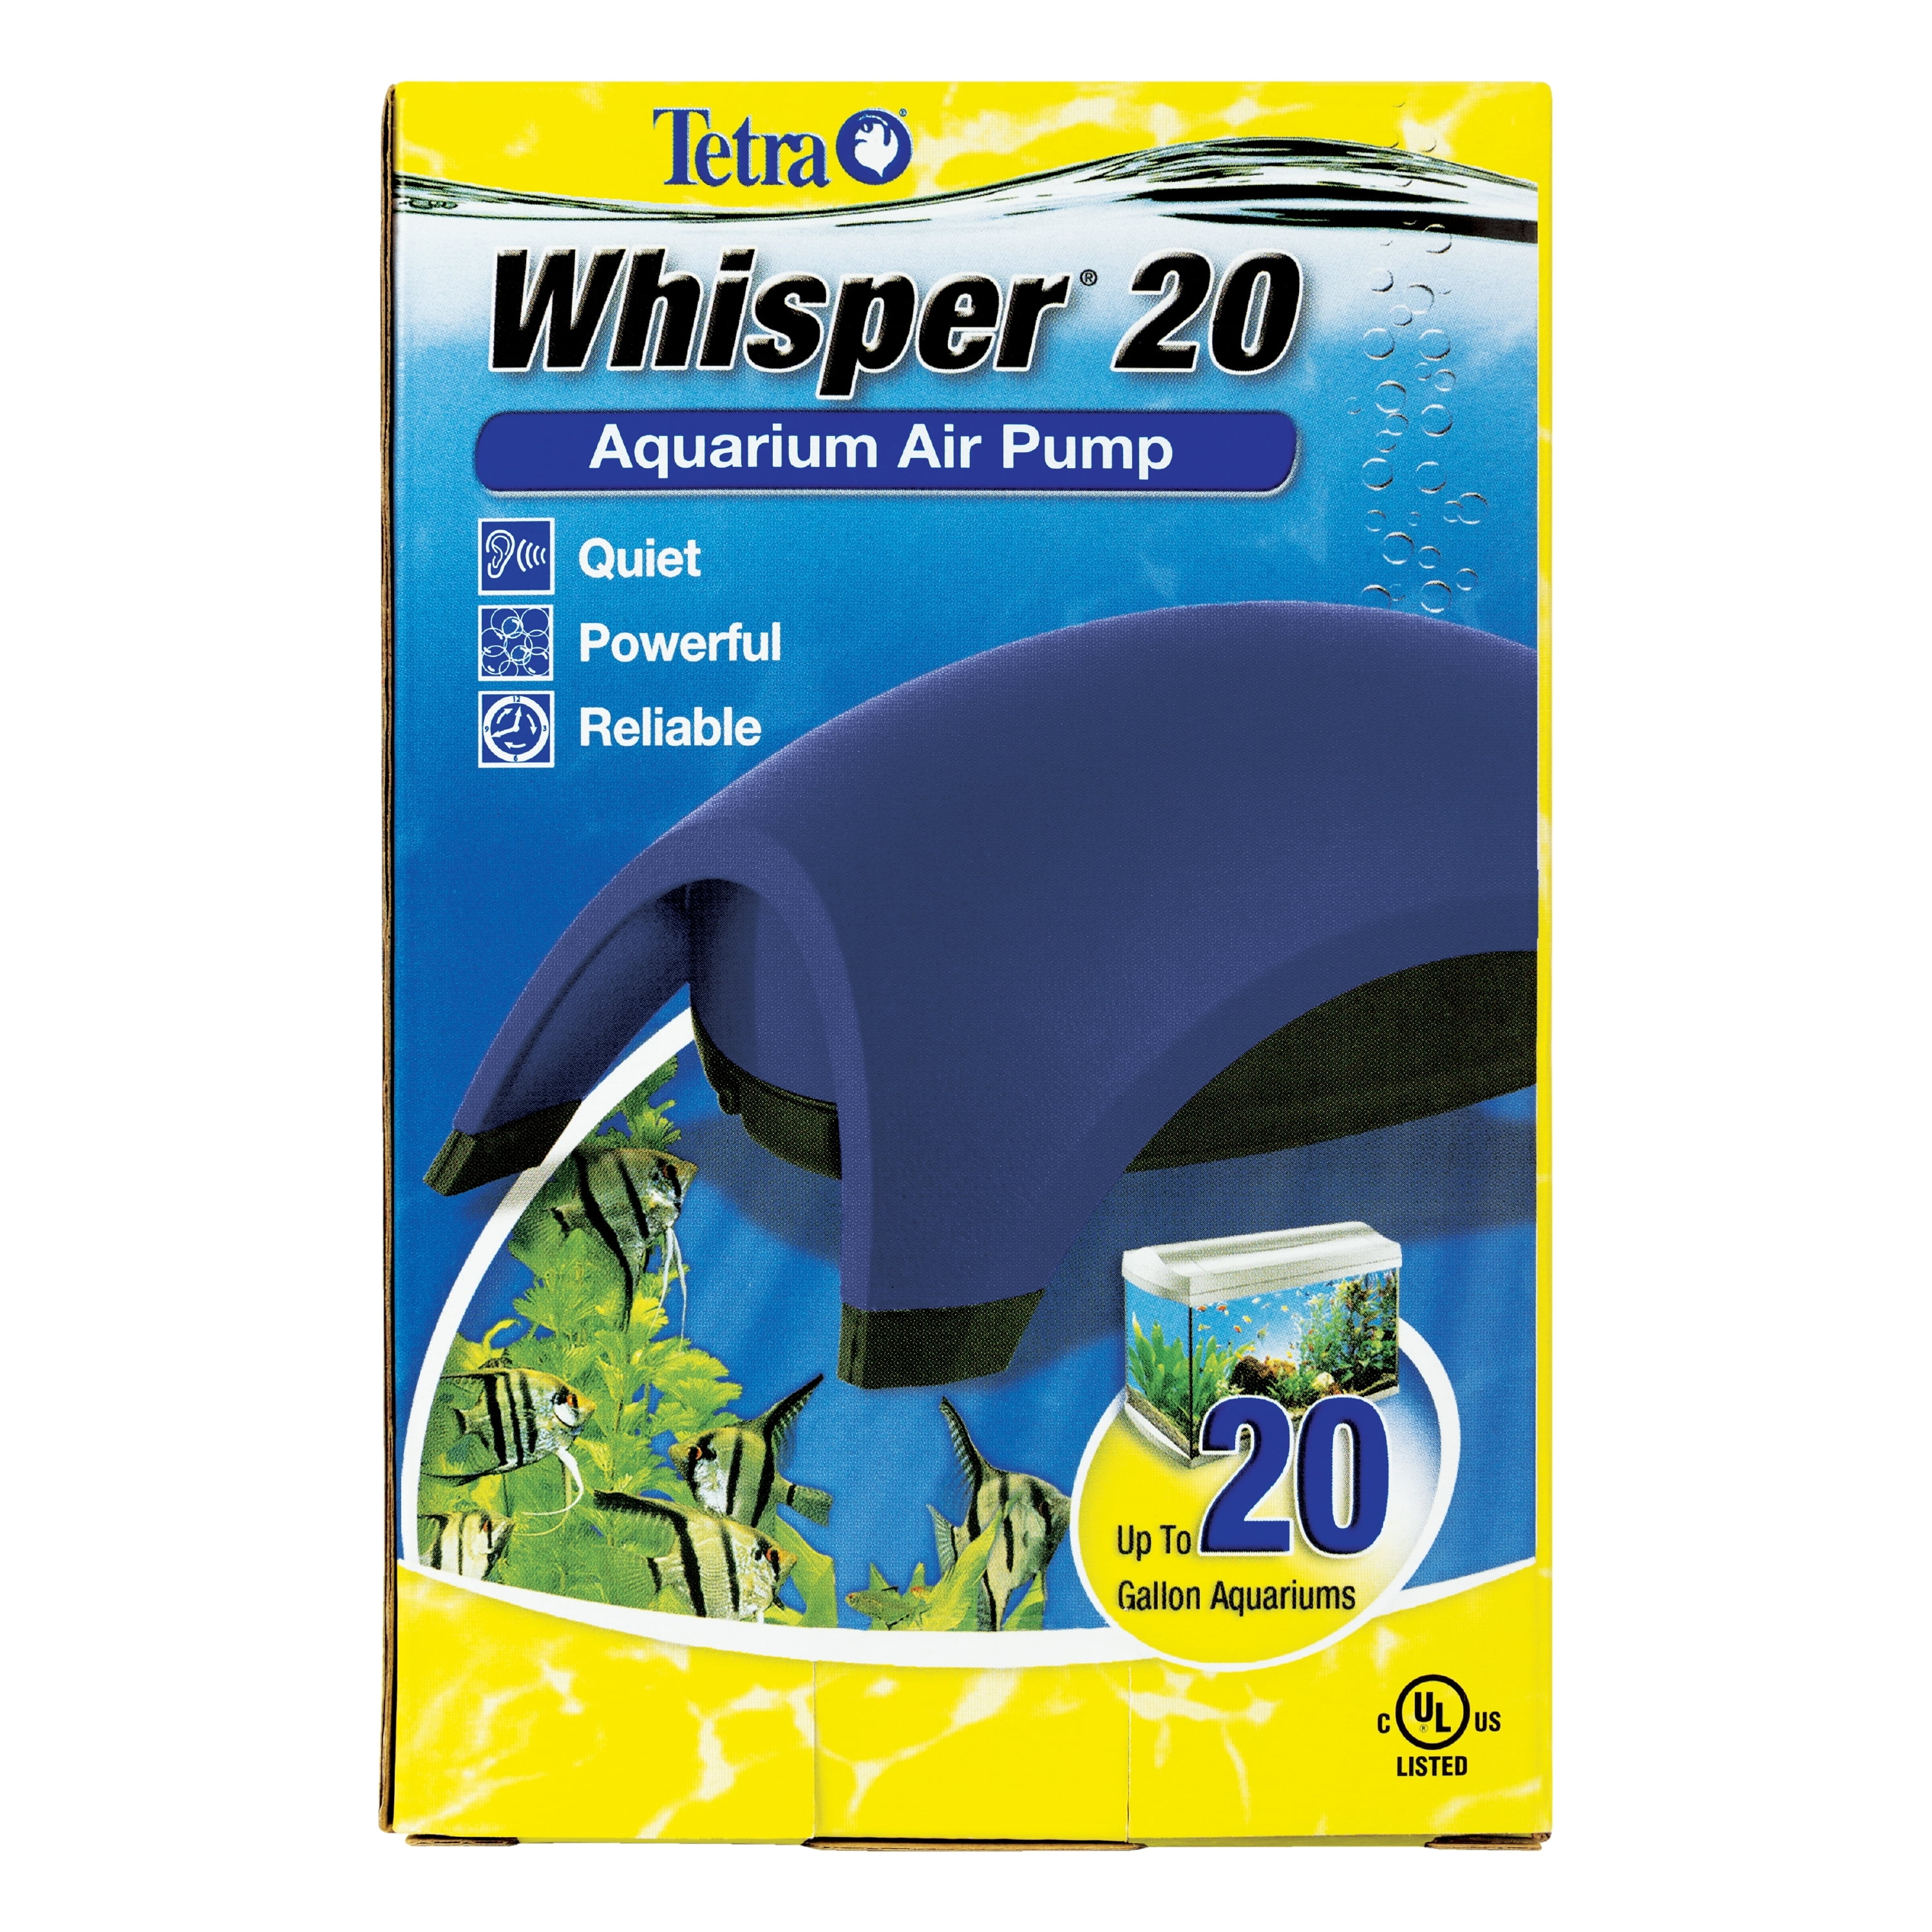 Tetra Whisper 20 Aquarium Air Pump